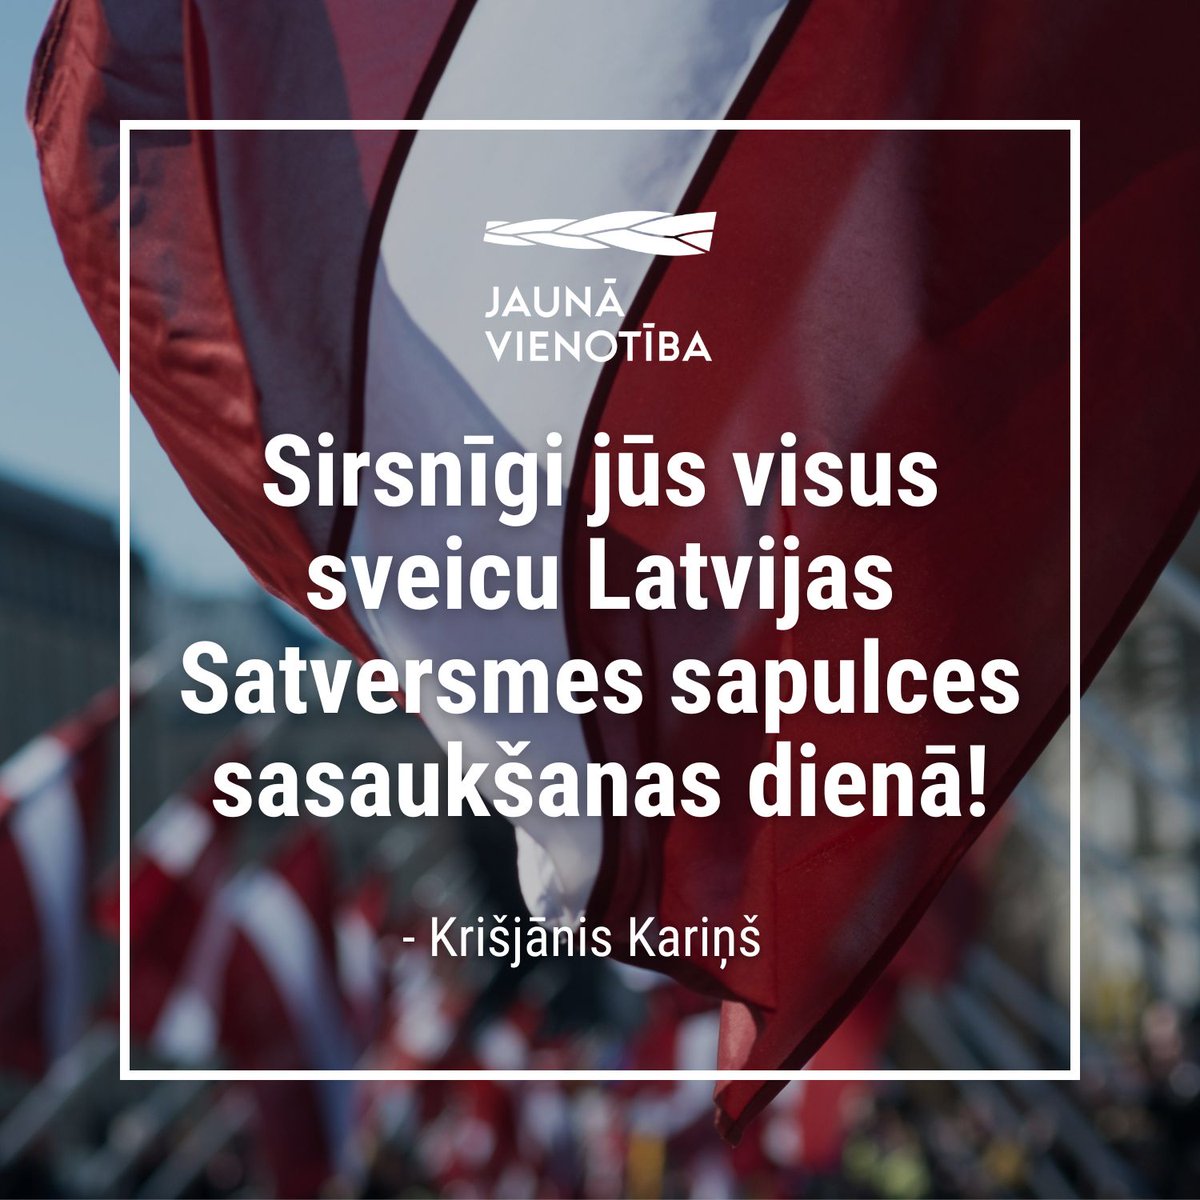 🇱🇻 1920. gada 1. maijā uz pirmo sēdi sanāca Latvijas Republikas Satversmes sapulce, kas vēlāk izstrādāja Latvijas valsts pamatlikumu jeb Satversmi. Lai Latvijā vienmēr stipra demokrātija! #SaulesmūžuLatvijai